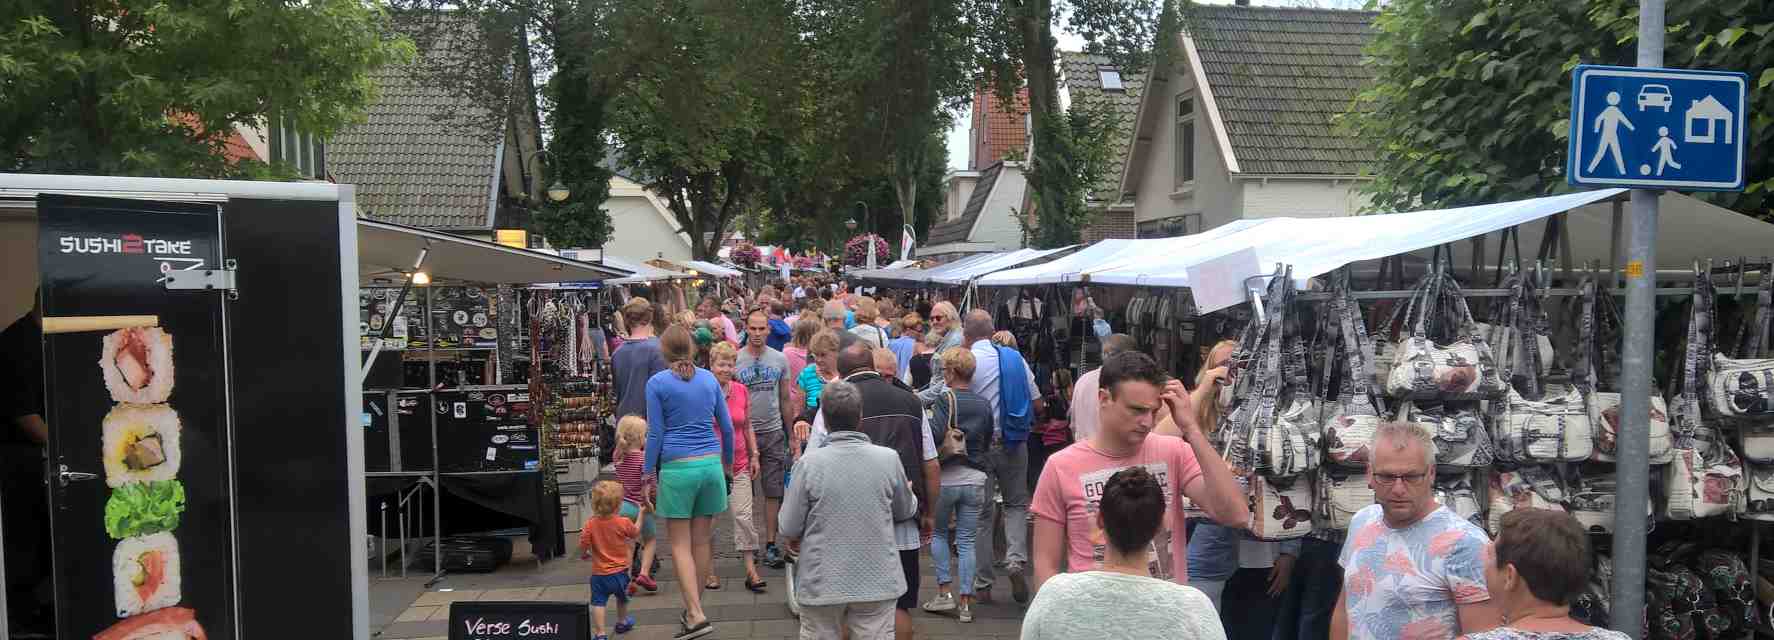 Winkelend publiek op de zomeravondmarkt in Schoorl